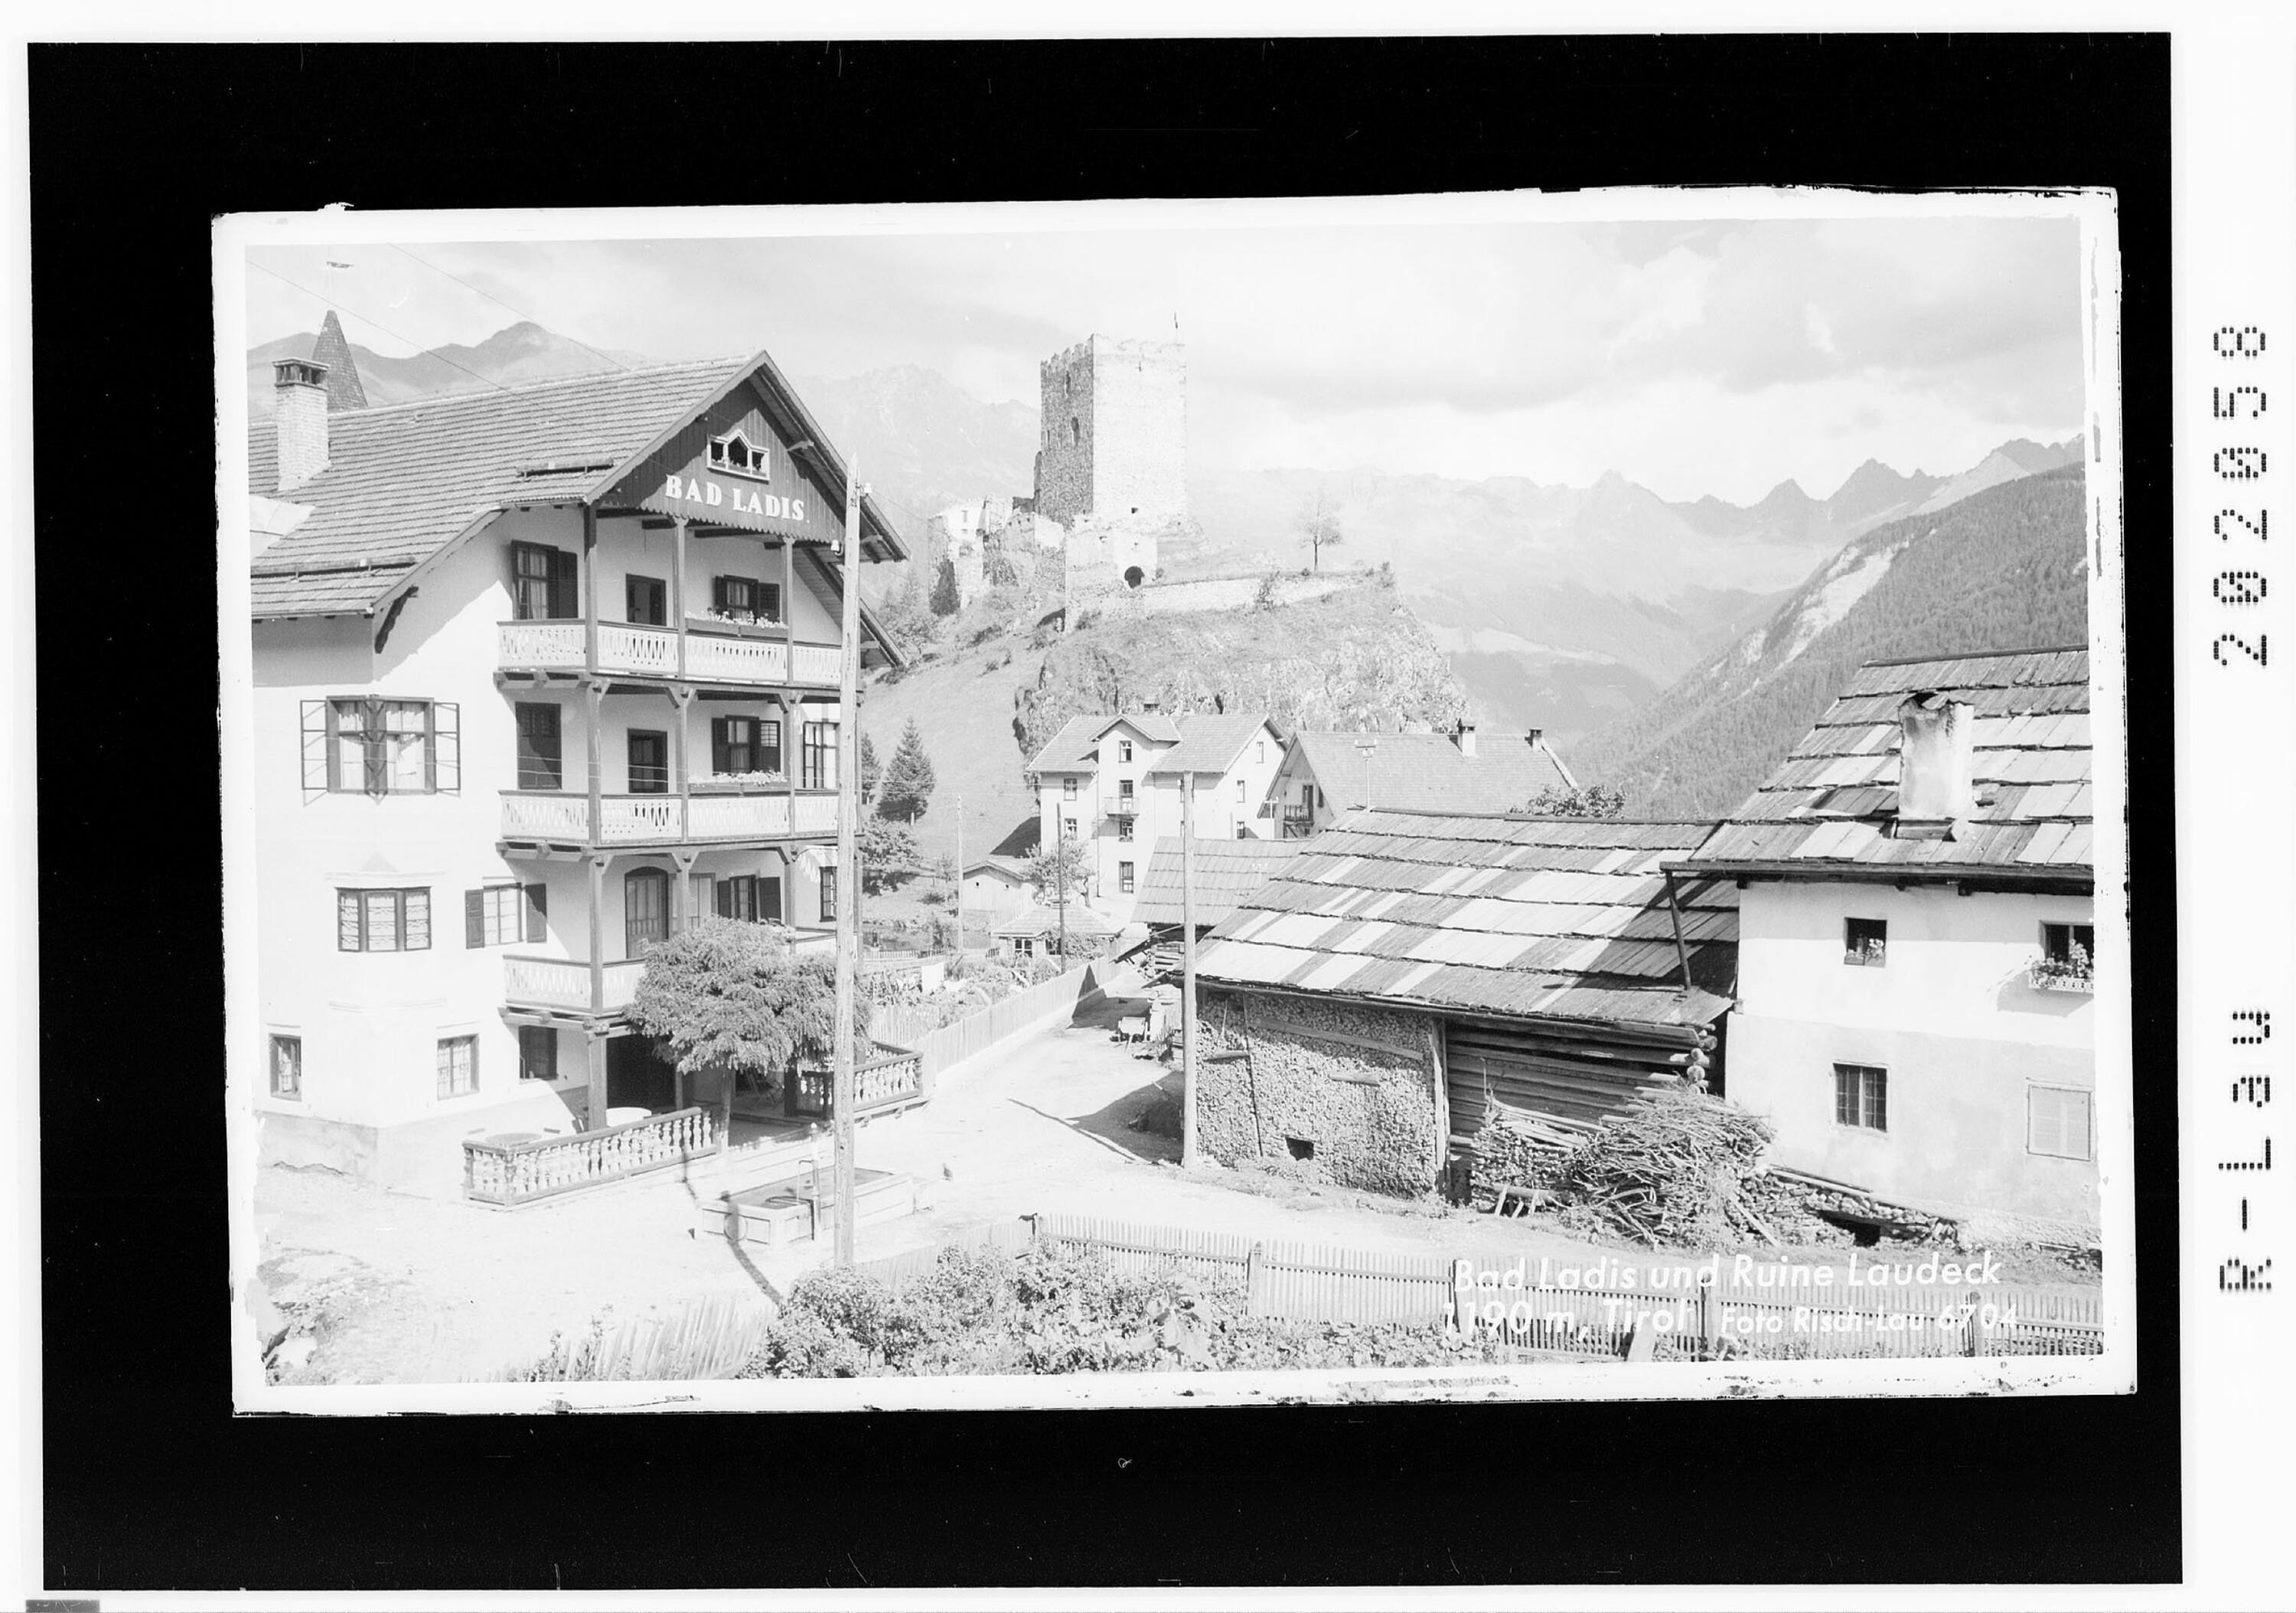 Bad Ladis und Ruine Laudegg 1190 m / Tirol></div>


    <hr>
    <div class=